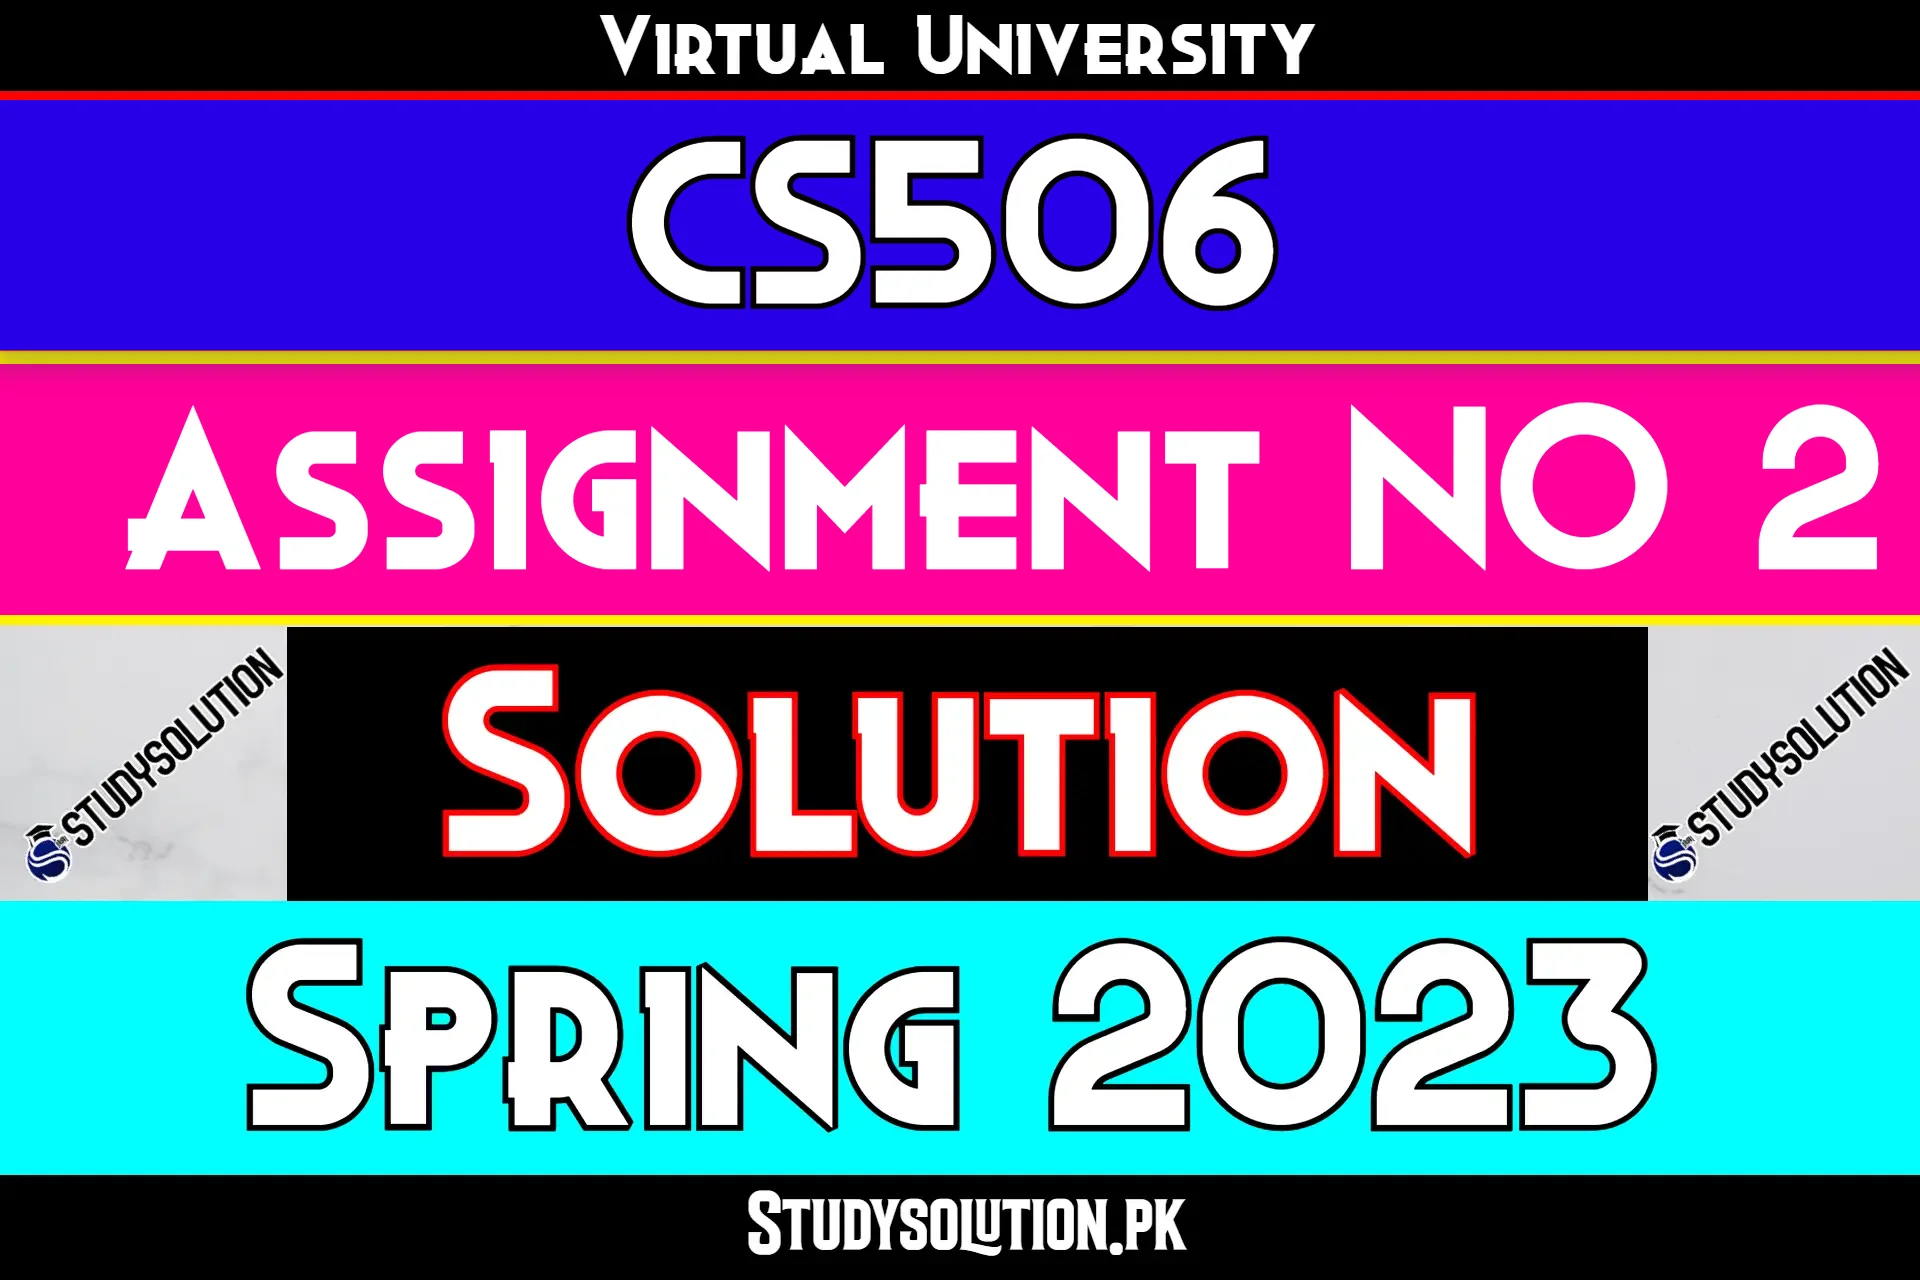 CS506 Assignment No 2 Solution Spring 2023